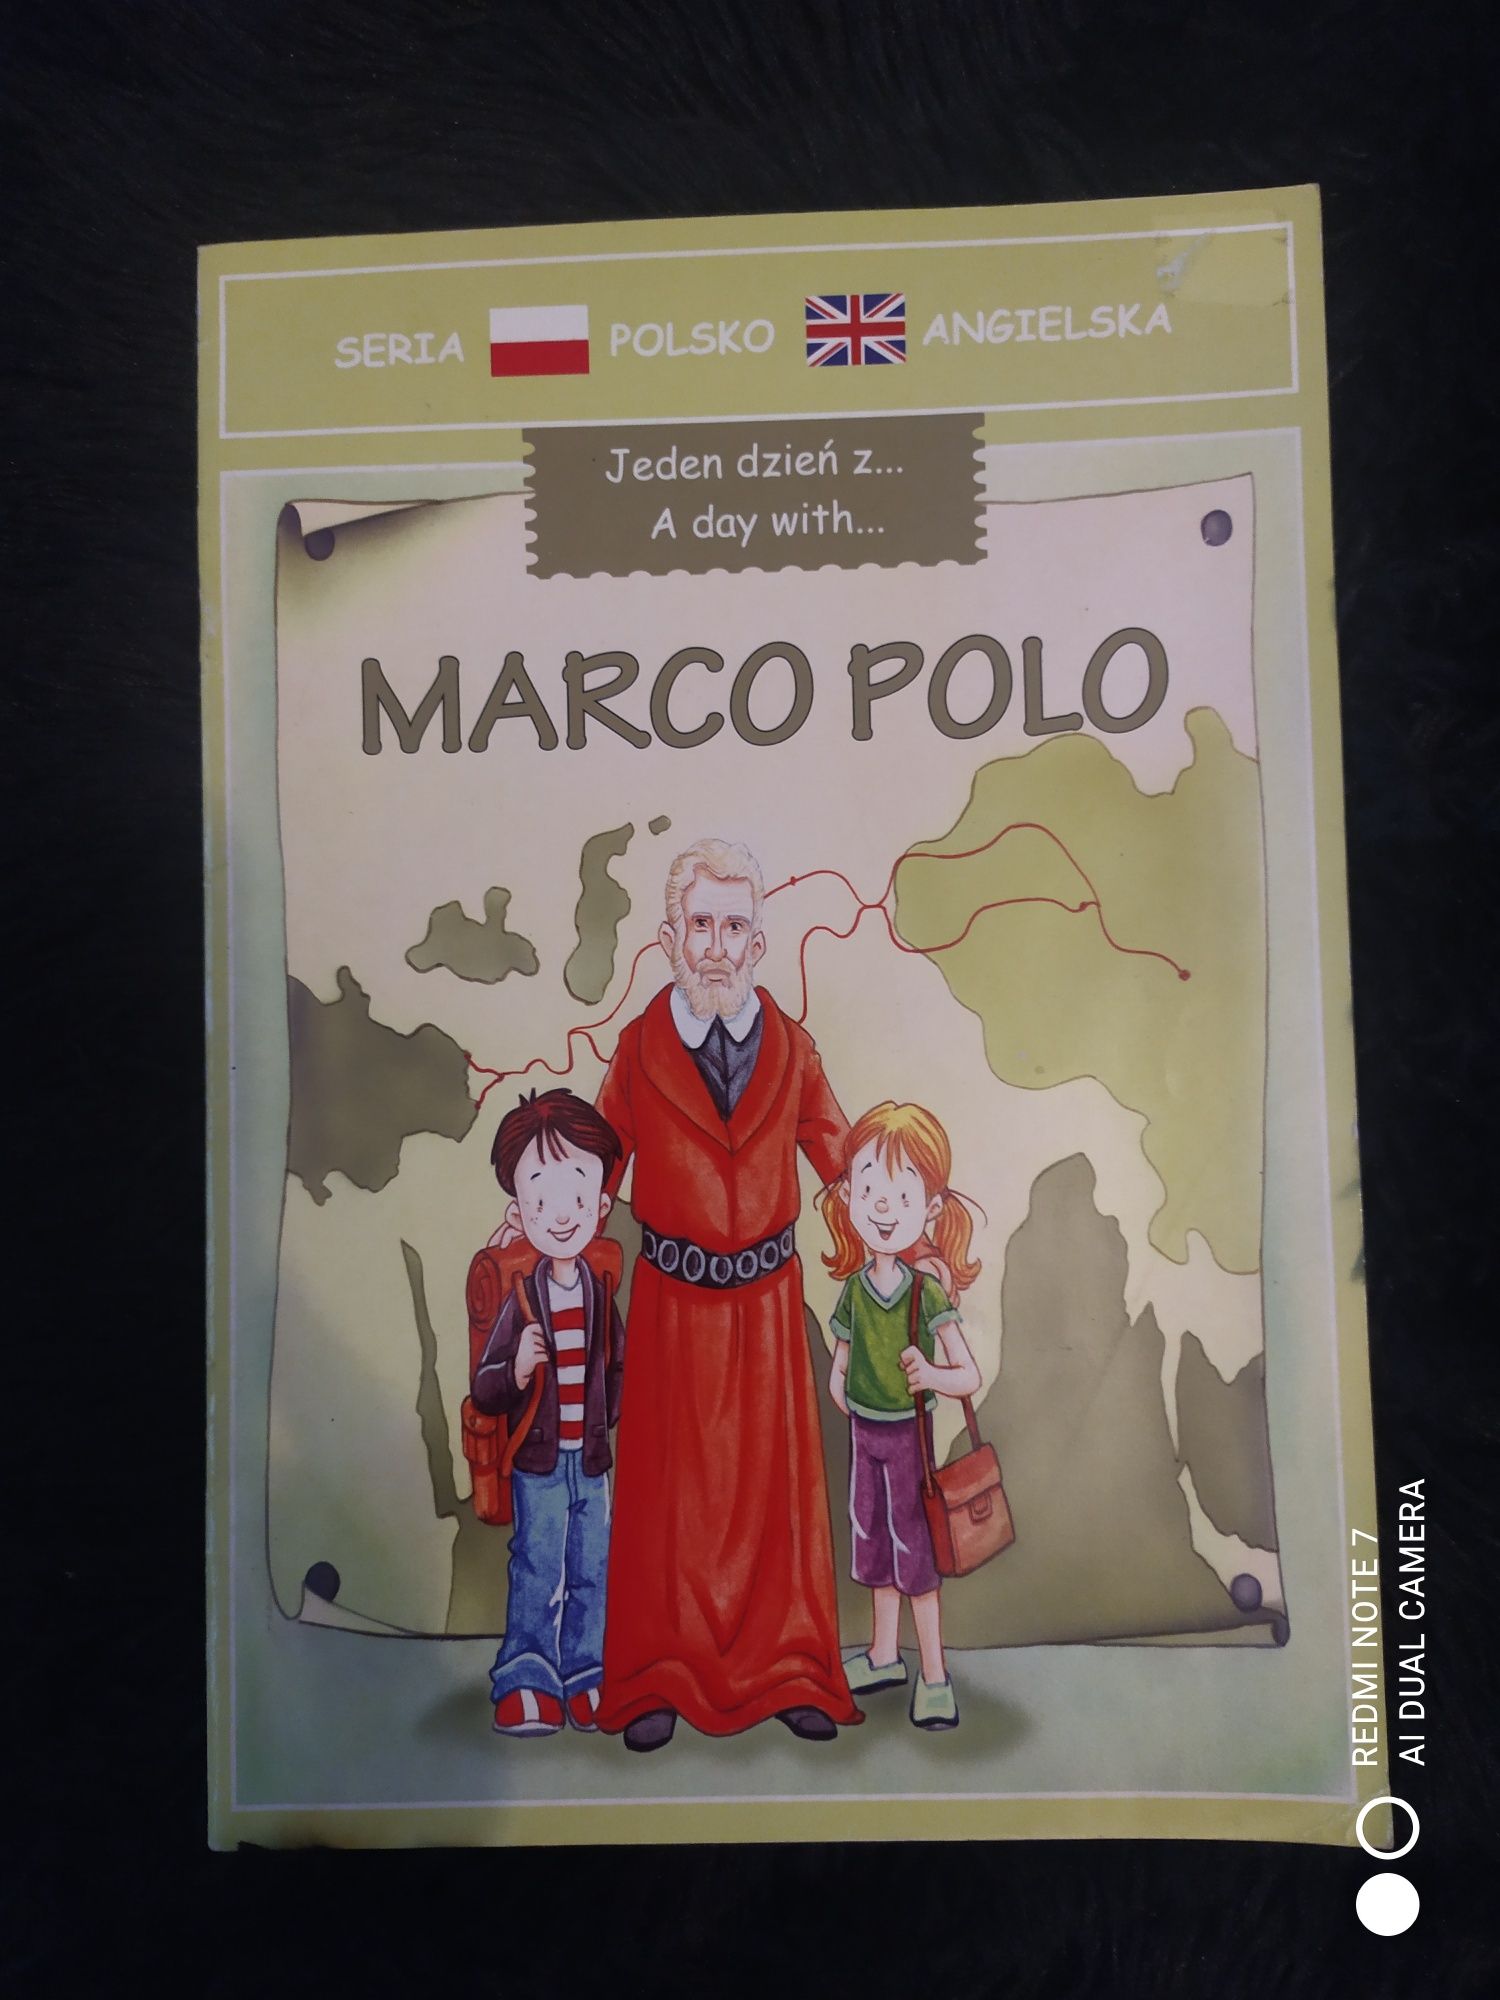 Jeden dzień z Marco Polo książka polsko-angielska